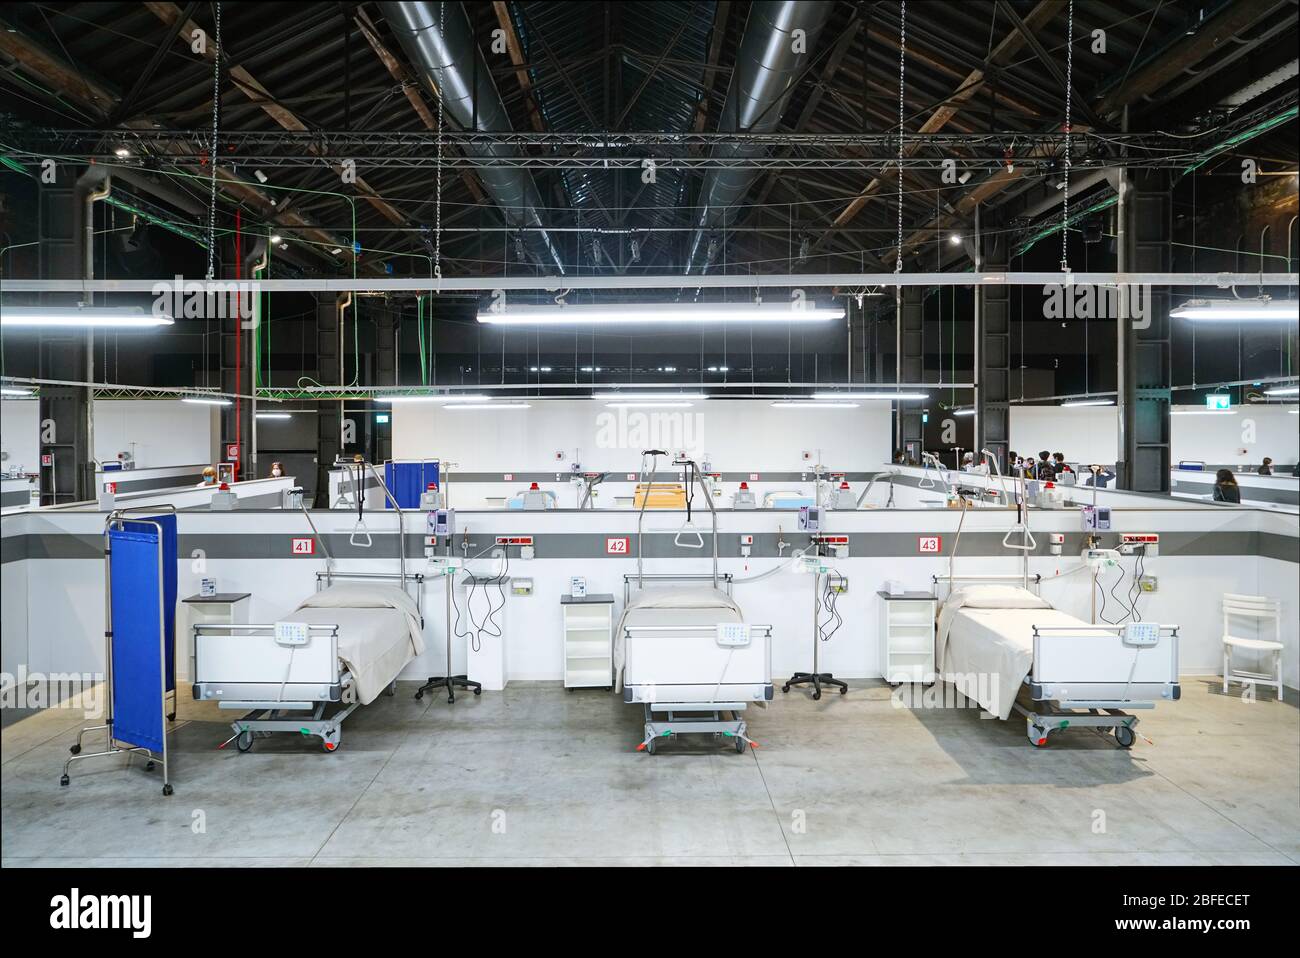 Hôpital de campagne de Covid, installé dans une ancienne usine industrielle, avec 90 lits équipés pour la thérapie intensive du coronavirus. Turin, Italie - avril 2020 Banque D'Images